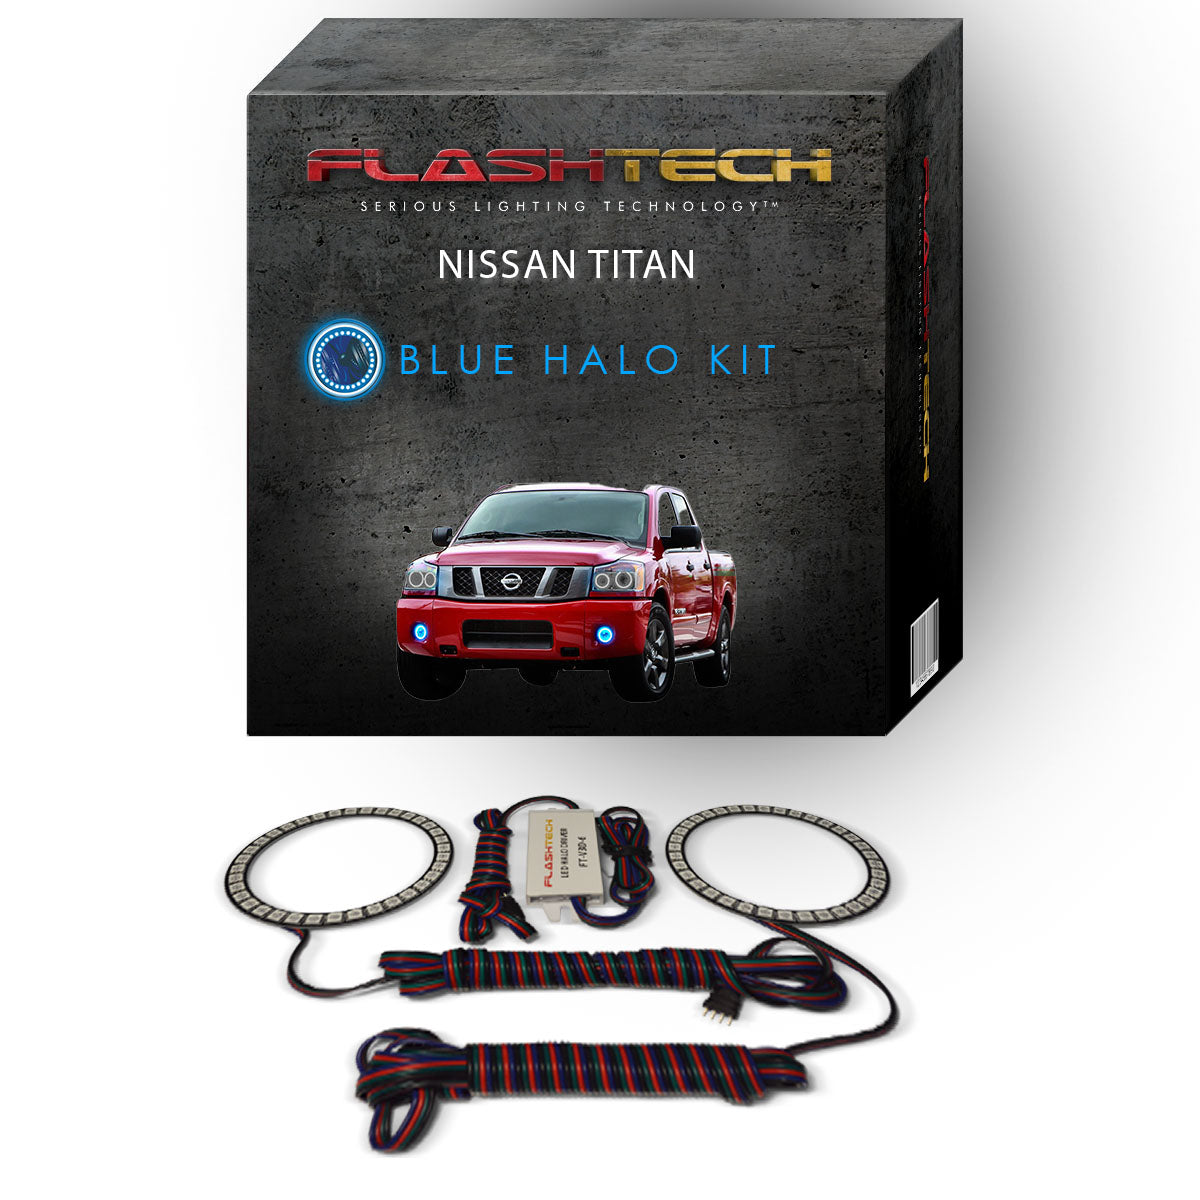 Nissan-Titan-2004, 2005, 2006, 2007, 2008, 2009, 2010, 2011, 2012, 2013, 2014, 2015-LED-Halo-Fog Lights-RGB-No Remote-NI-TI0415-V3F